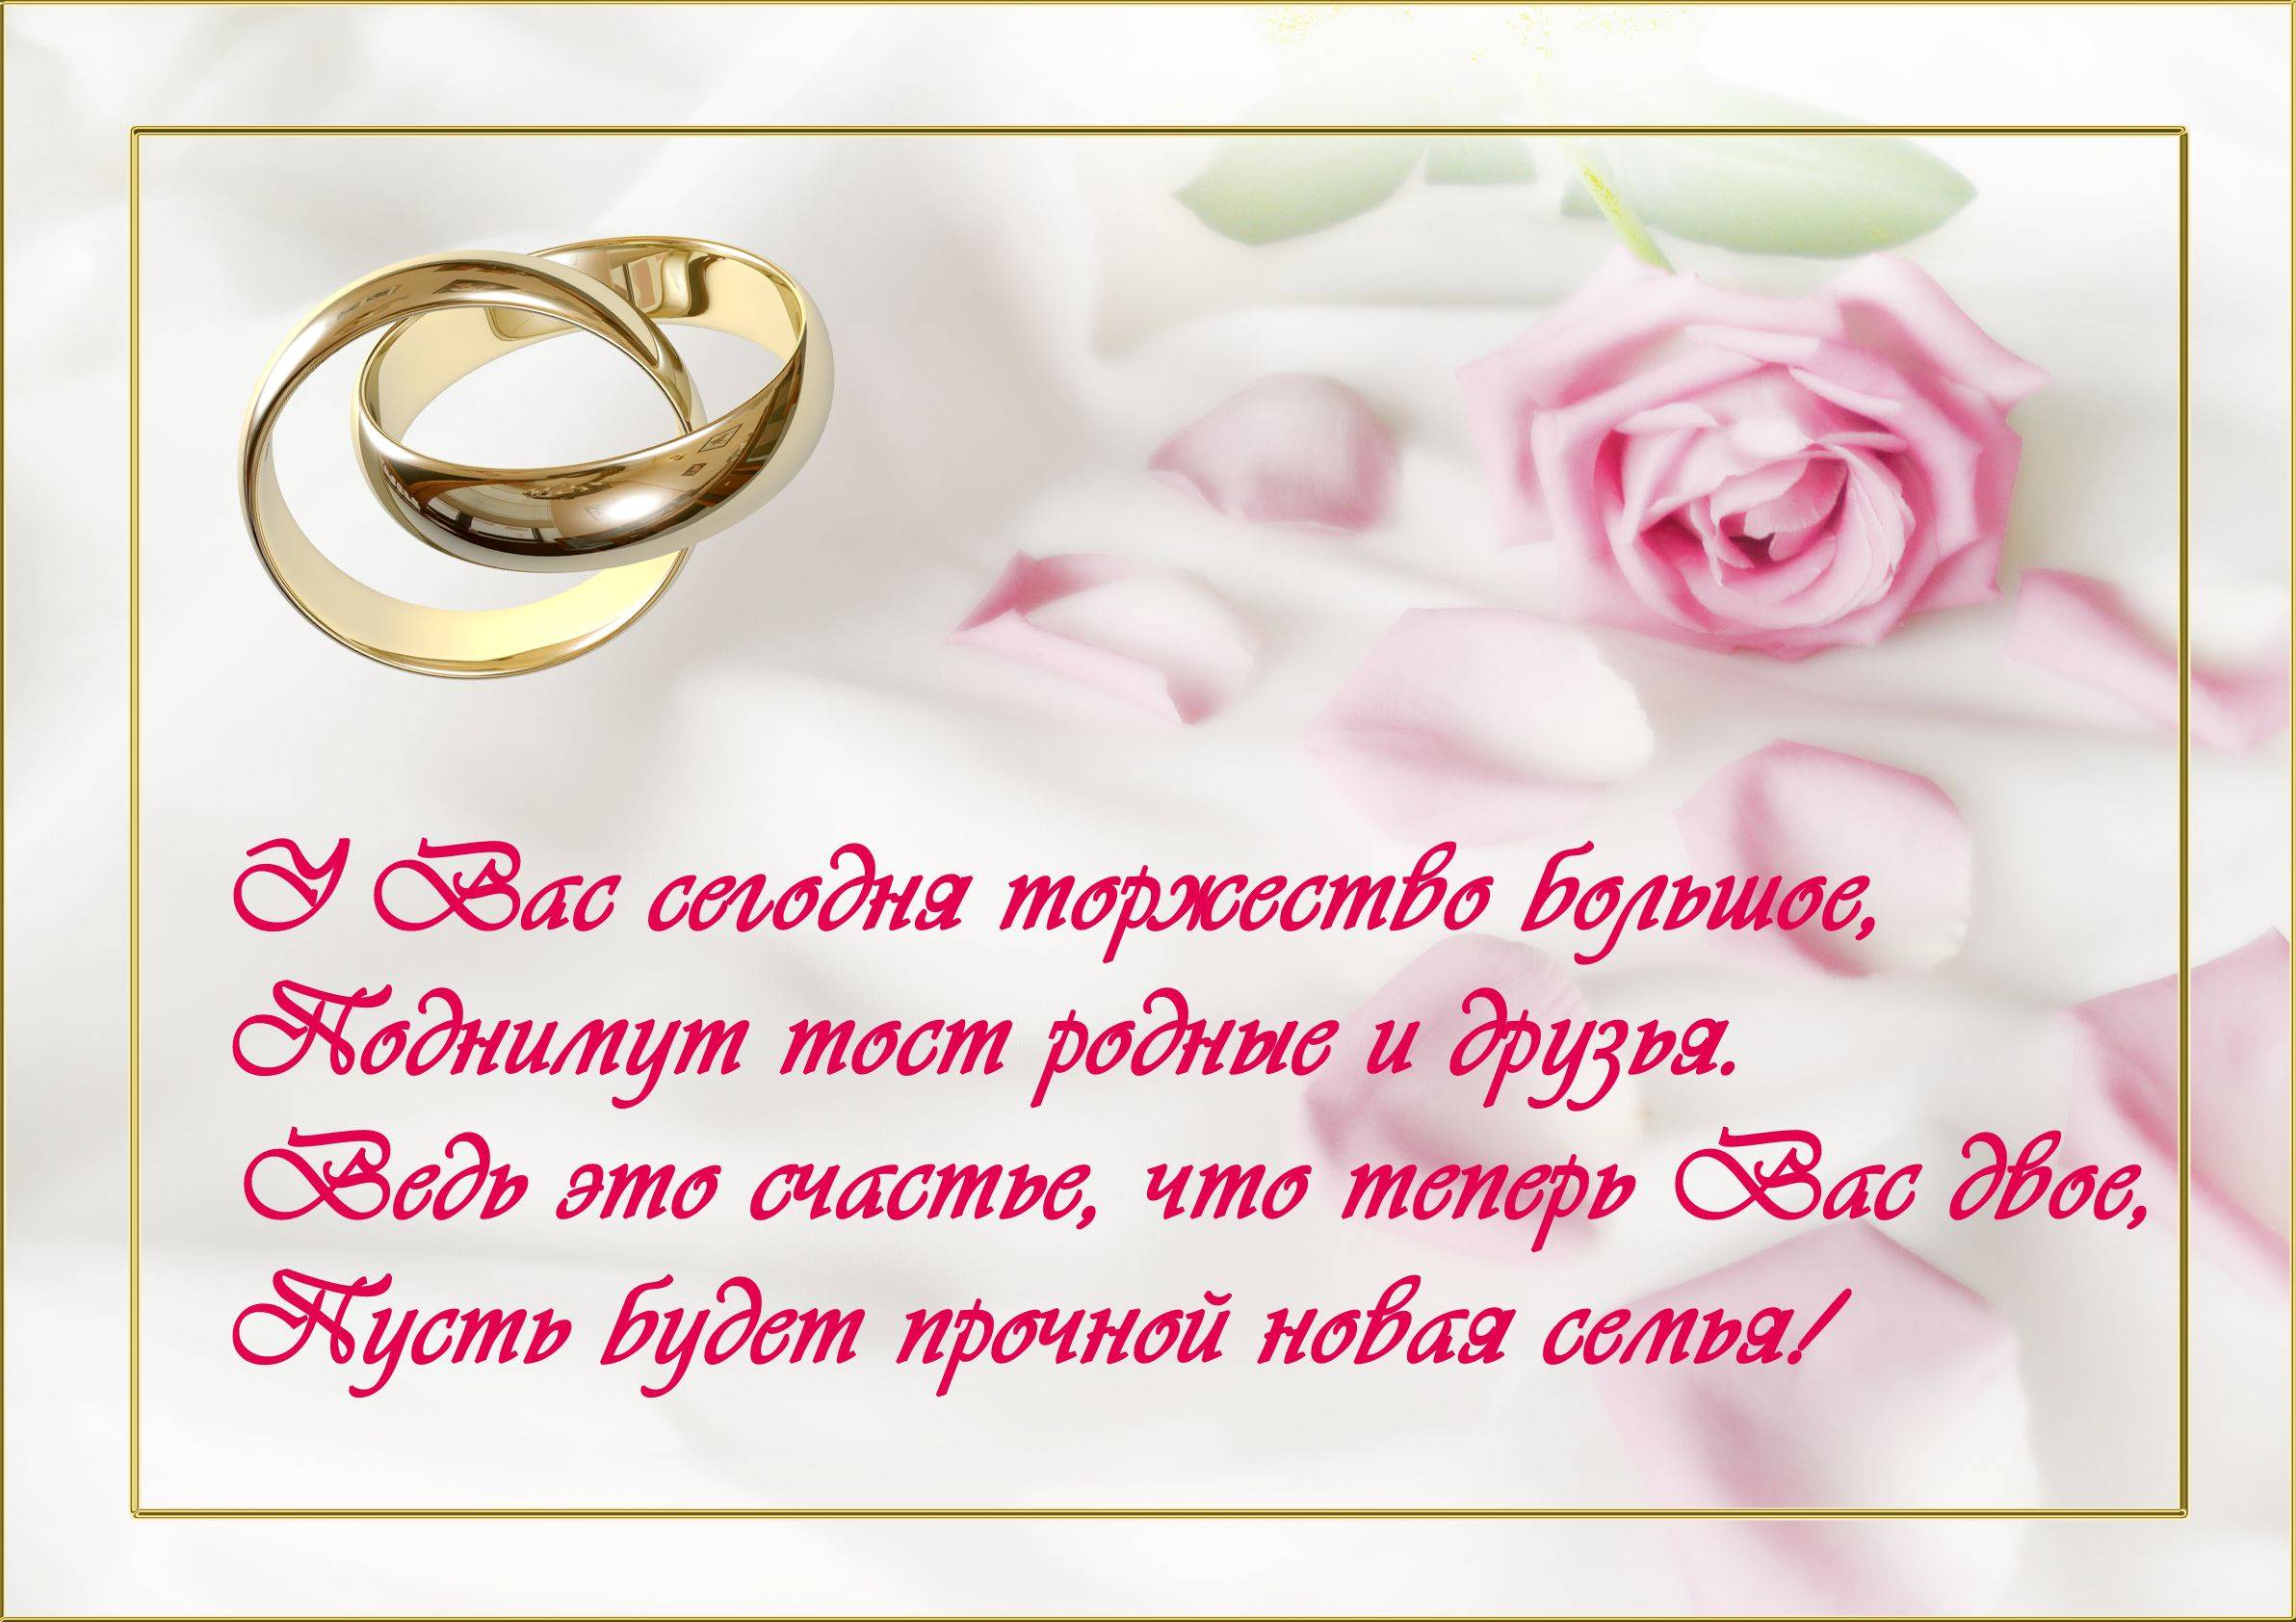 Поздравления на свадьбу своими словами  50 пожеланий к бракосочетанию молодоженам, трогательные, тосты, подруге, невесте, короткие